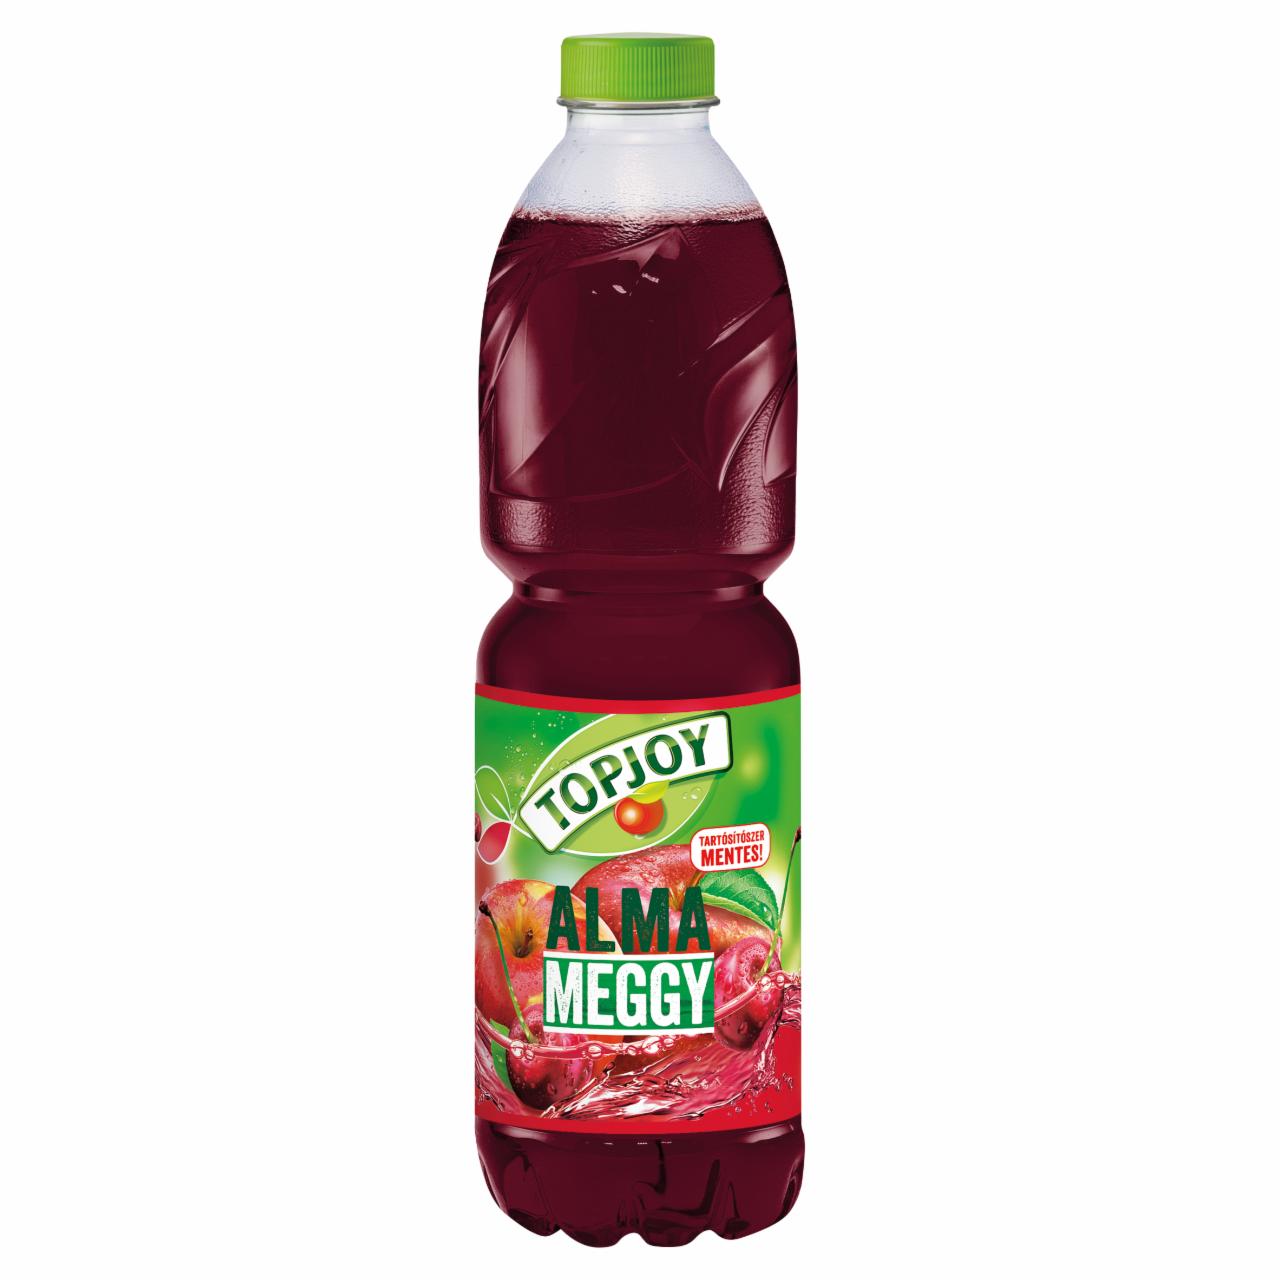 Képek - Topjoy alma-meggy ital cukorral és édesítőszerrel 1,5 l